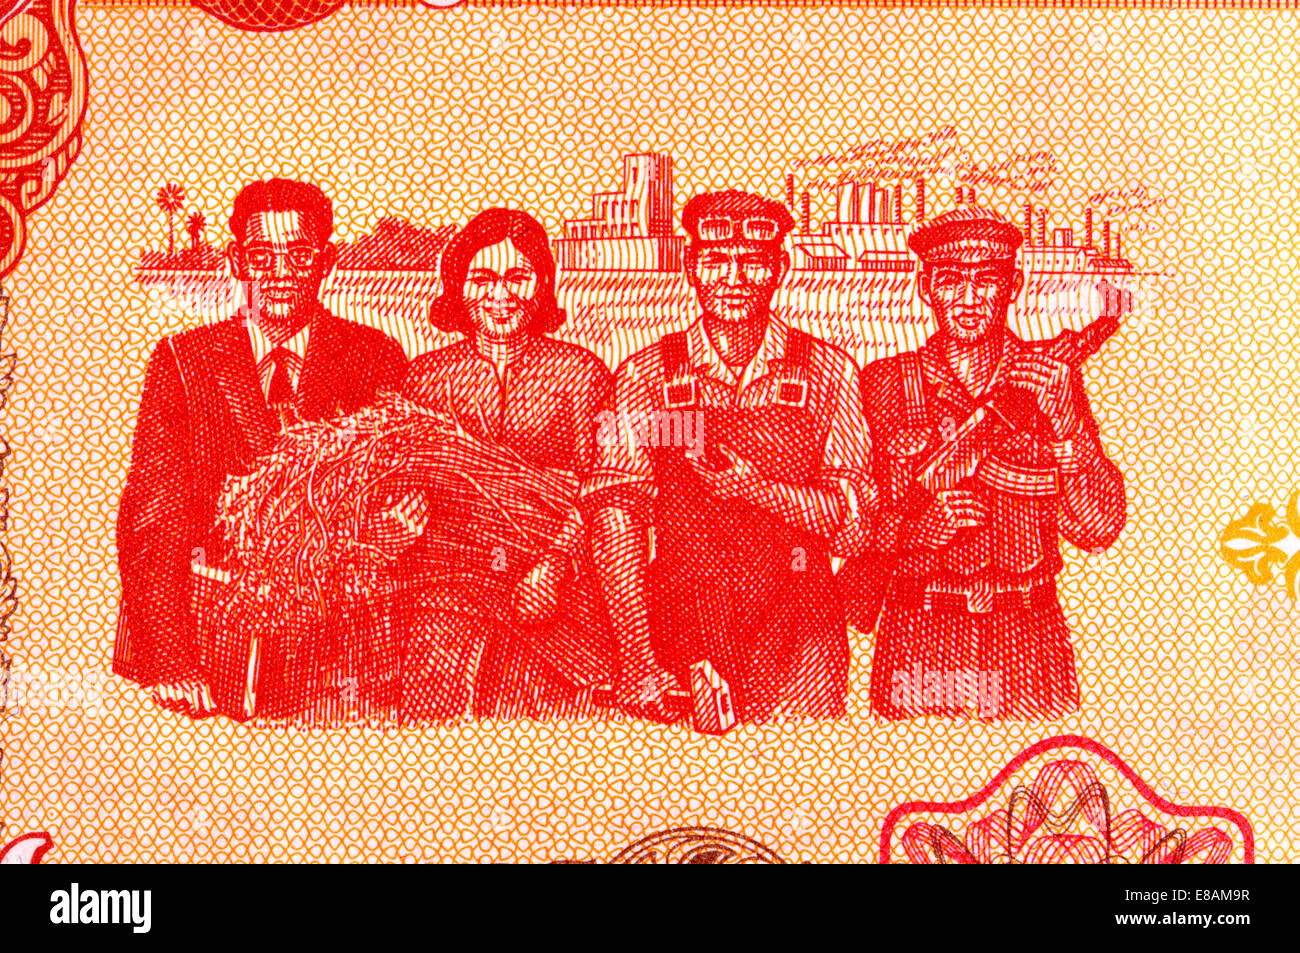 Dettaglio da 5 cambogiano Riels banconota che mostra i lavoratori Foto Stock